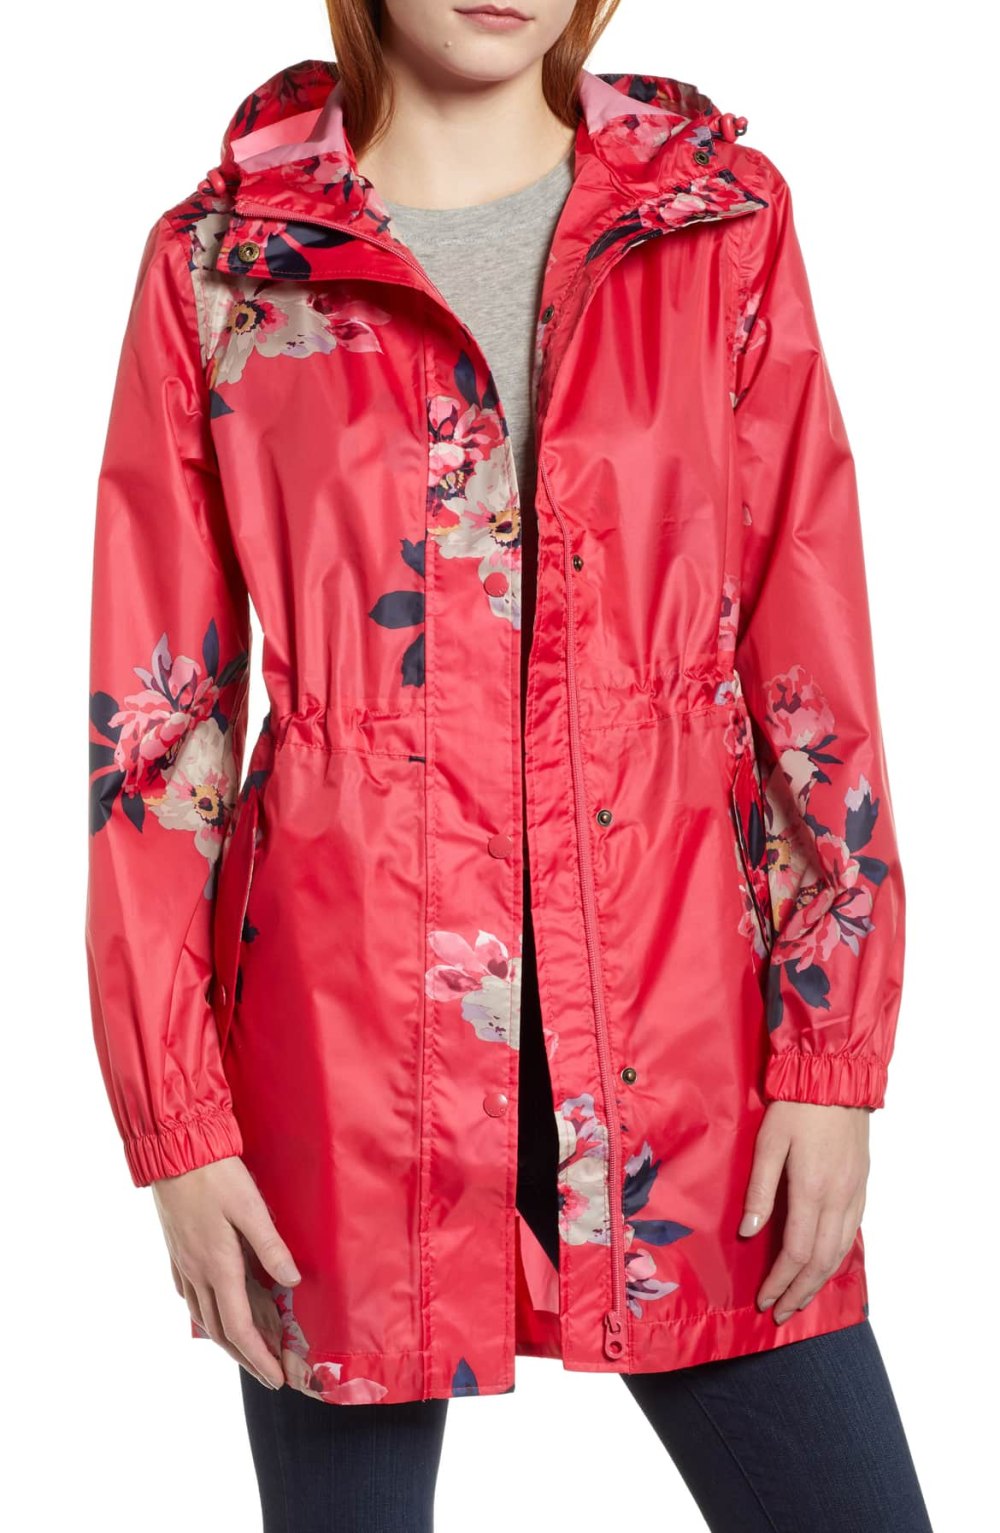 red floral jacket raincoat